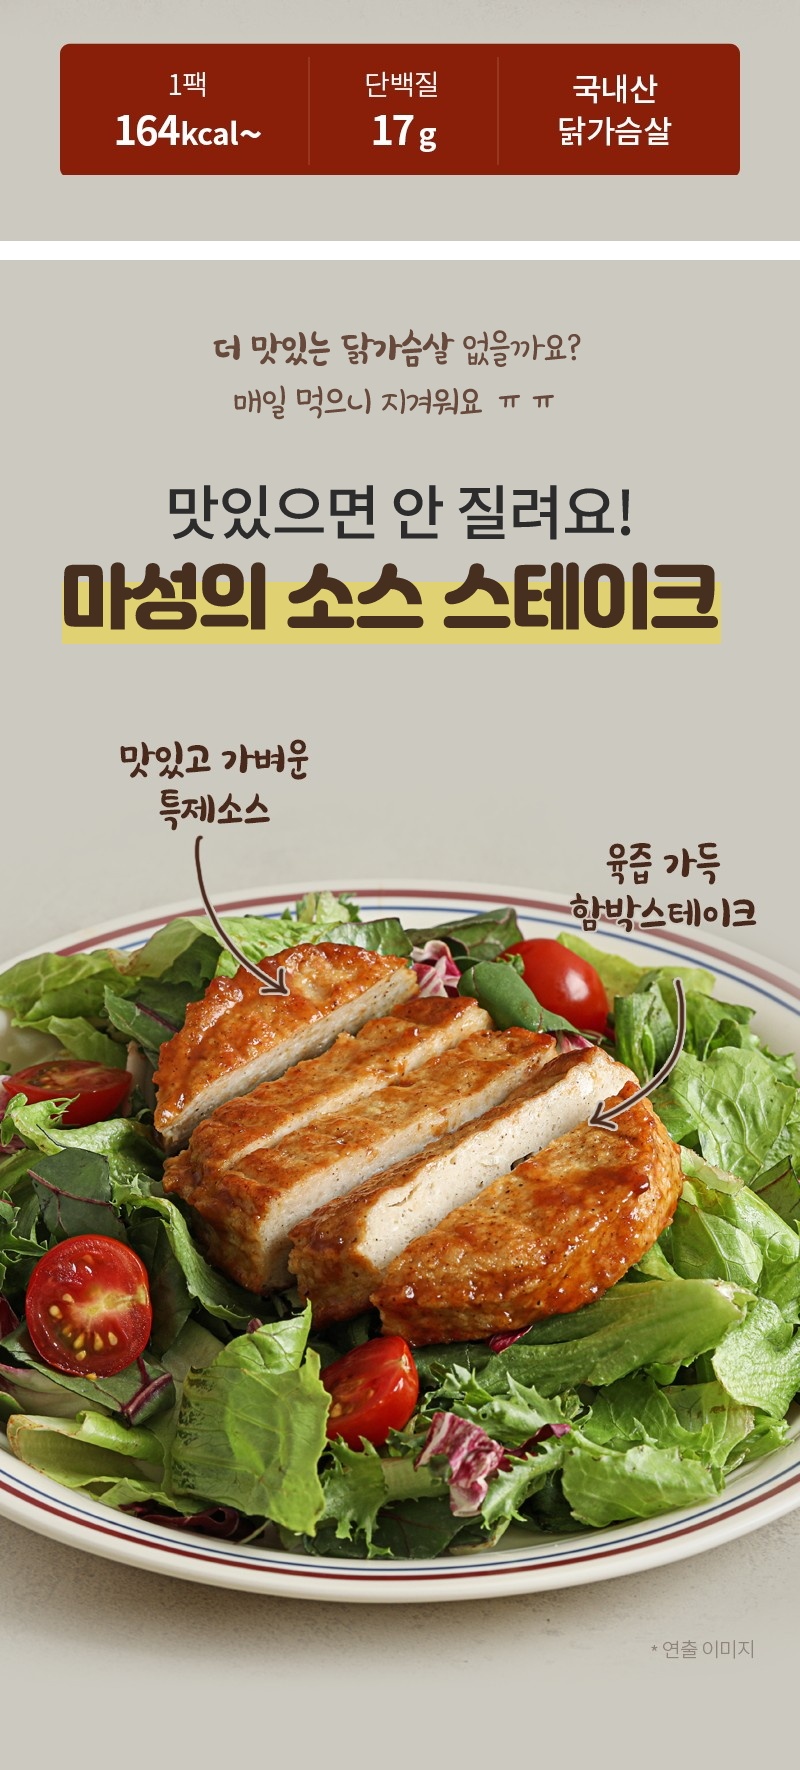 닭신 소스 닭가슴살 스테이크 3종 체험단 모집 (9월 19일 ~ 09월 25일)